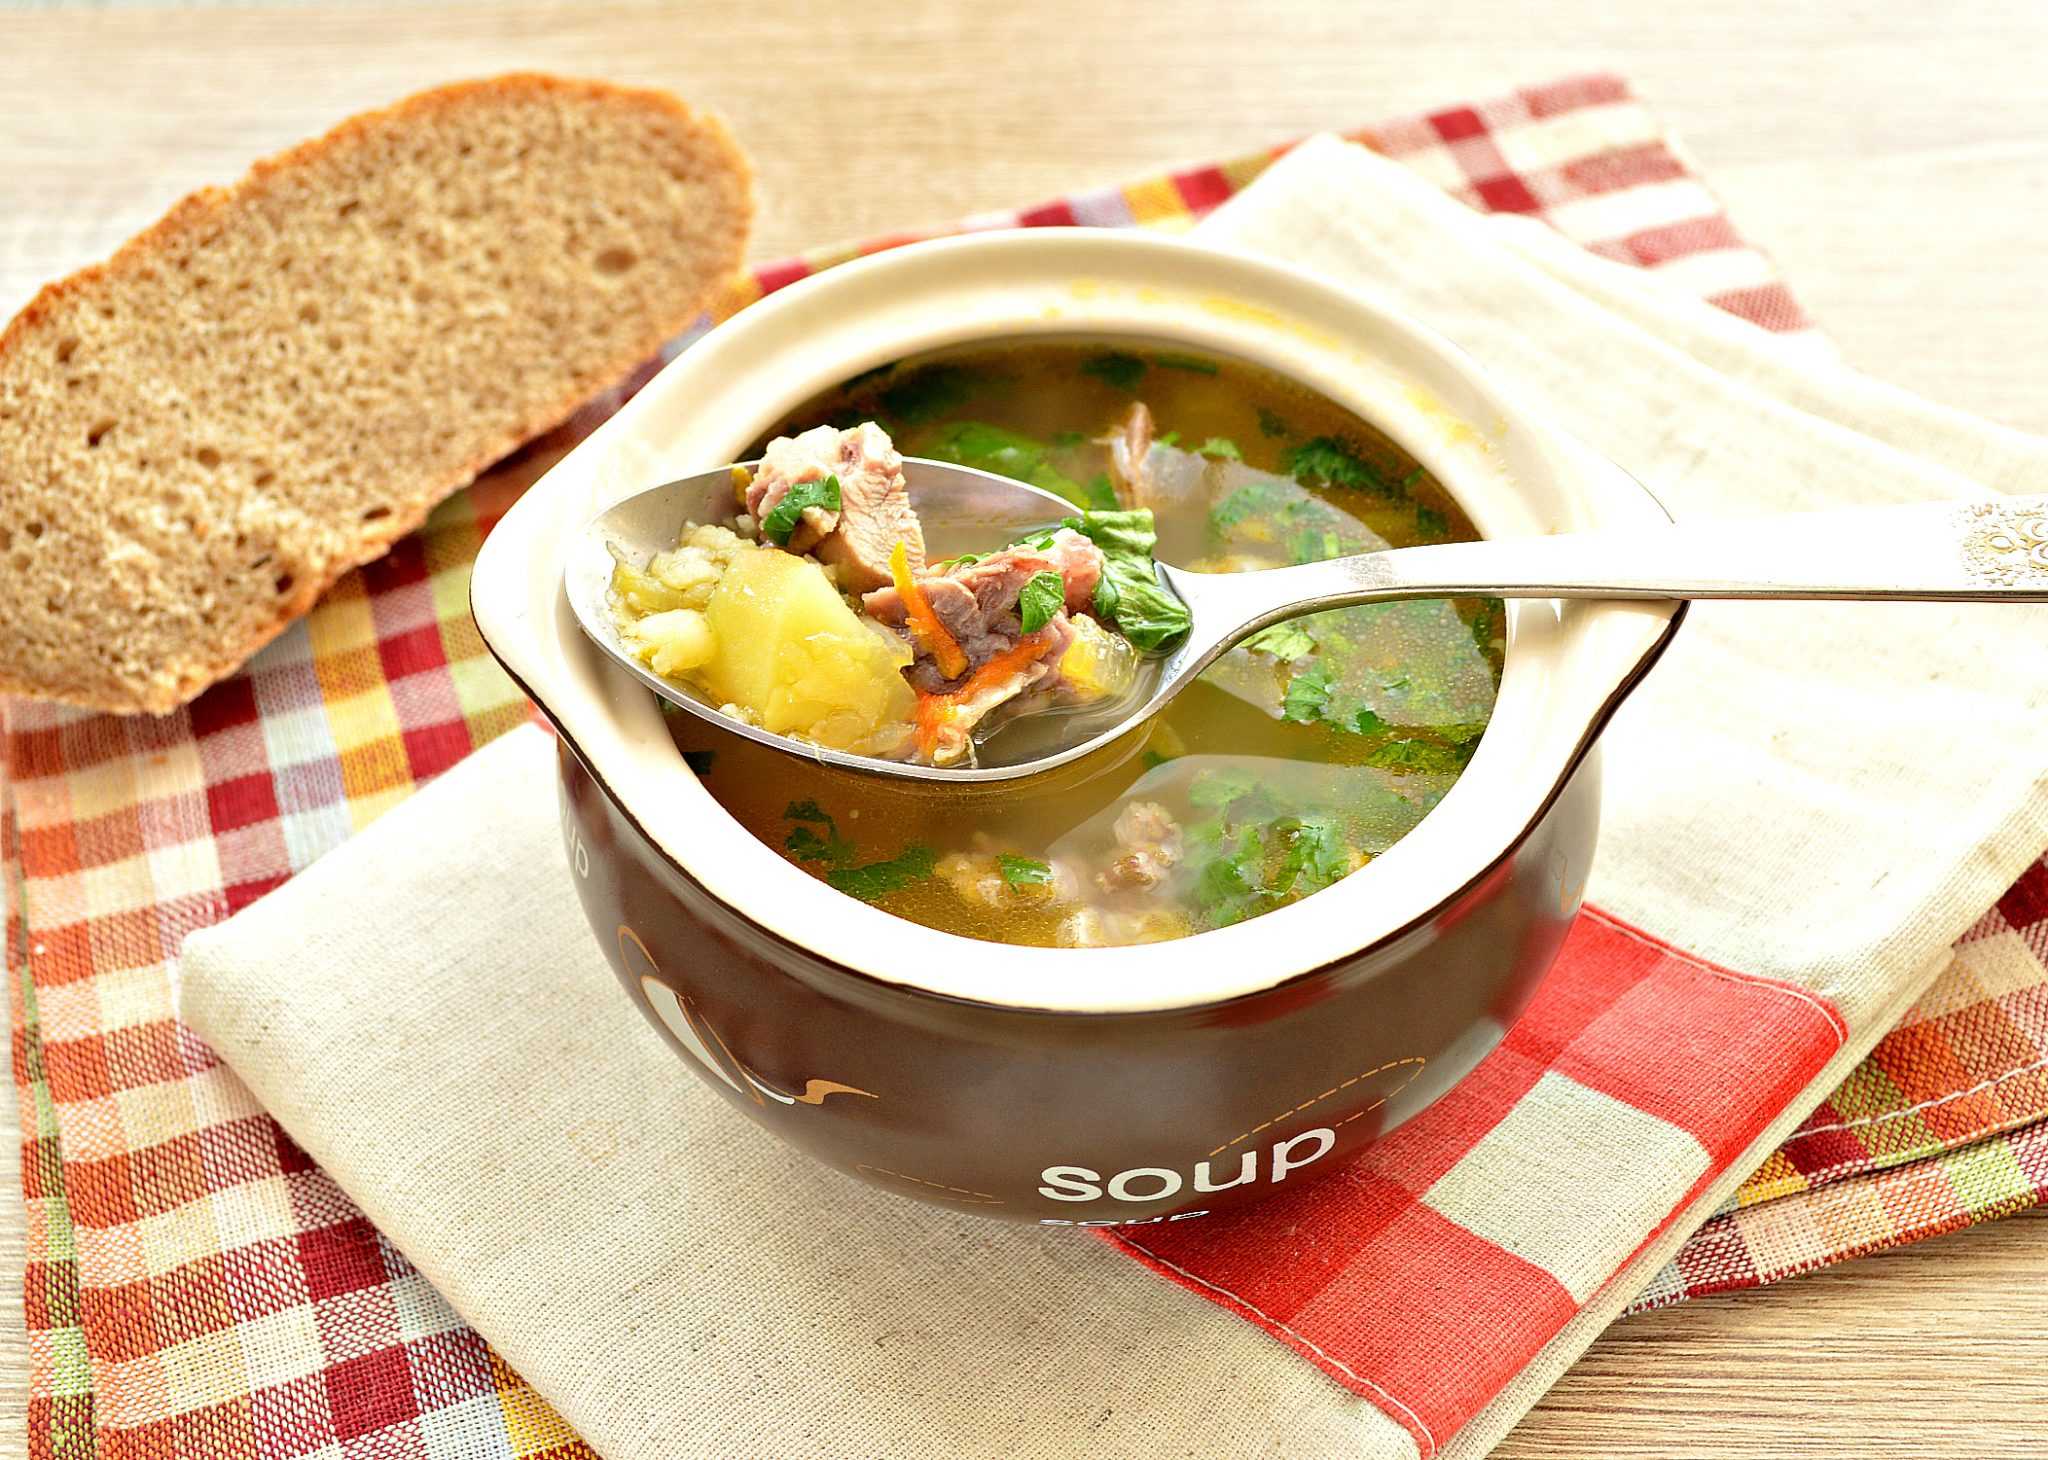 Суп со свининой простой рецепт. Крупеня белорусская кухня. Суп со свининой. Гороховый суп со свининой. Гороховый суп сос вининлй.